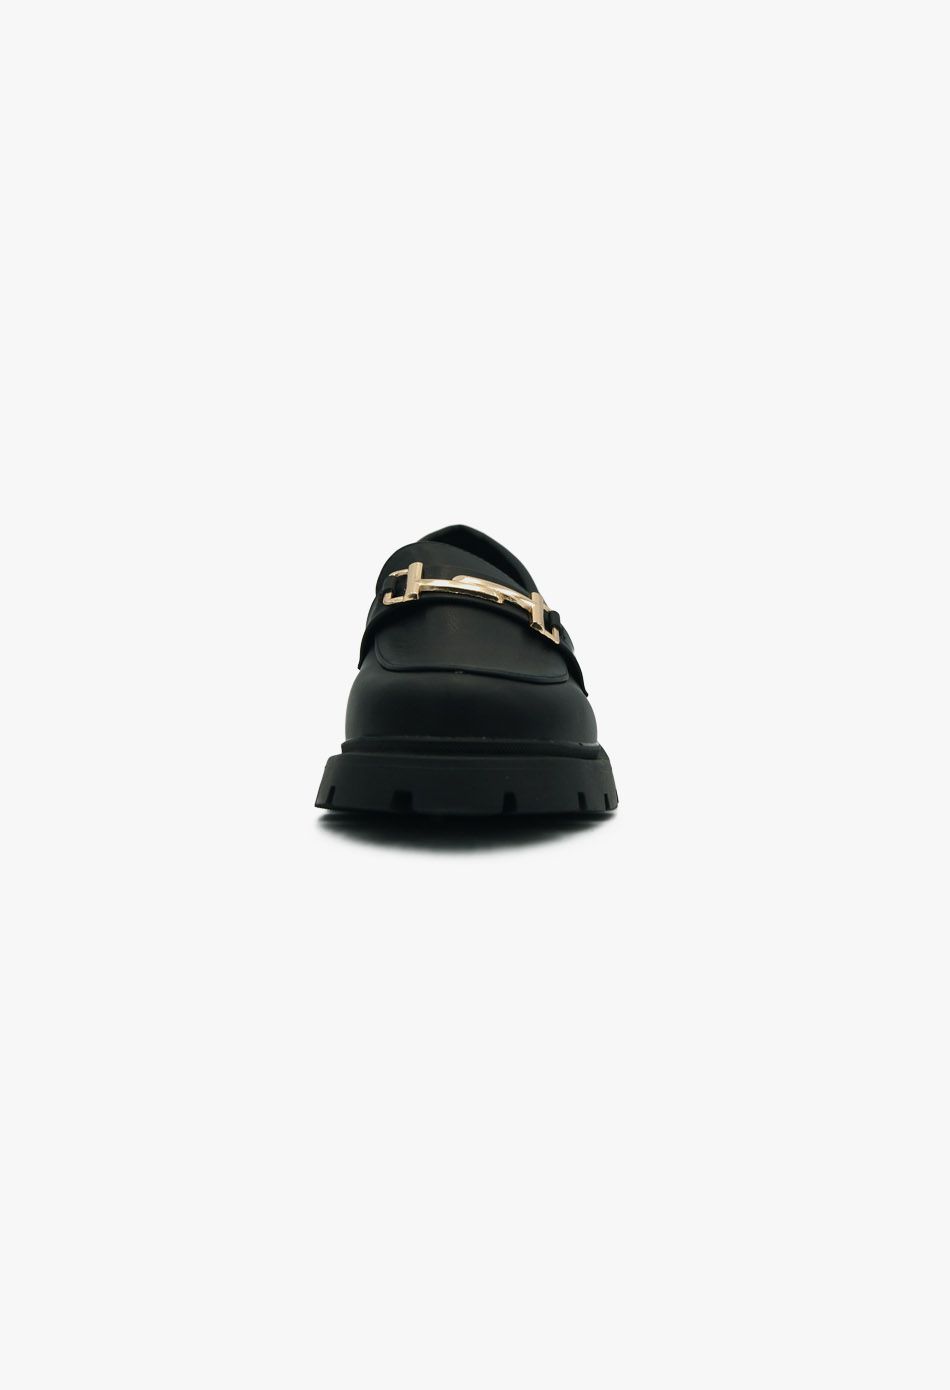 Γυναικεία Loafers σε Μαύρο Χρώμα / 77-431-black Γυναικεία Oxfords & Loafers joya.gr